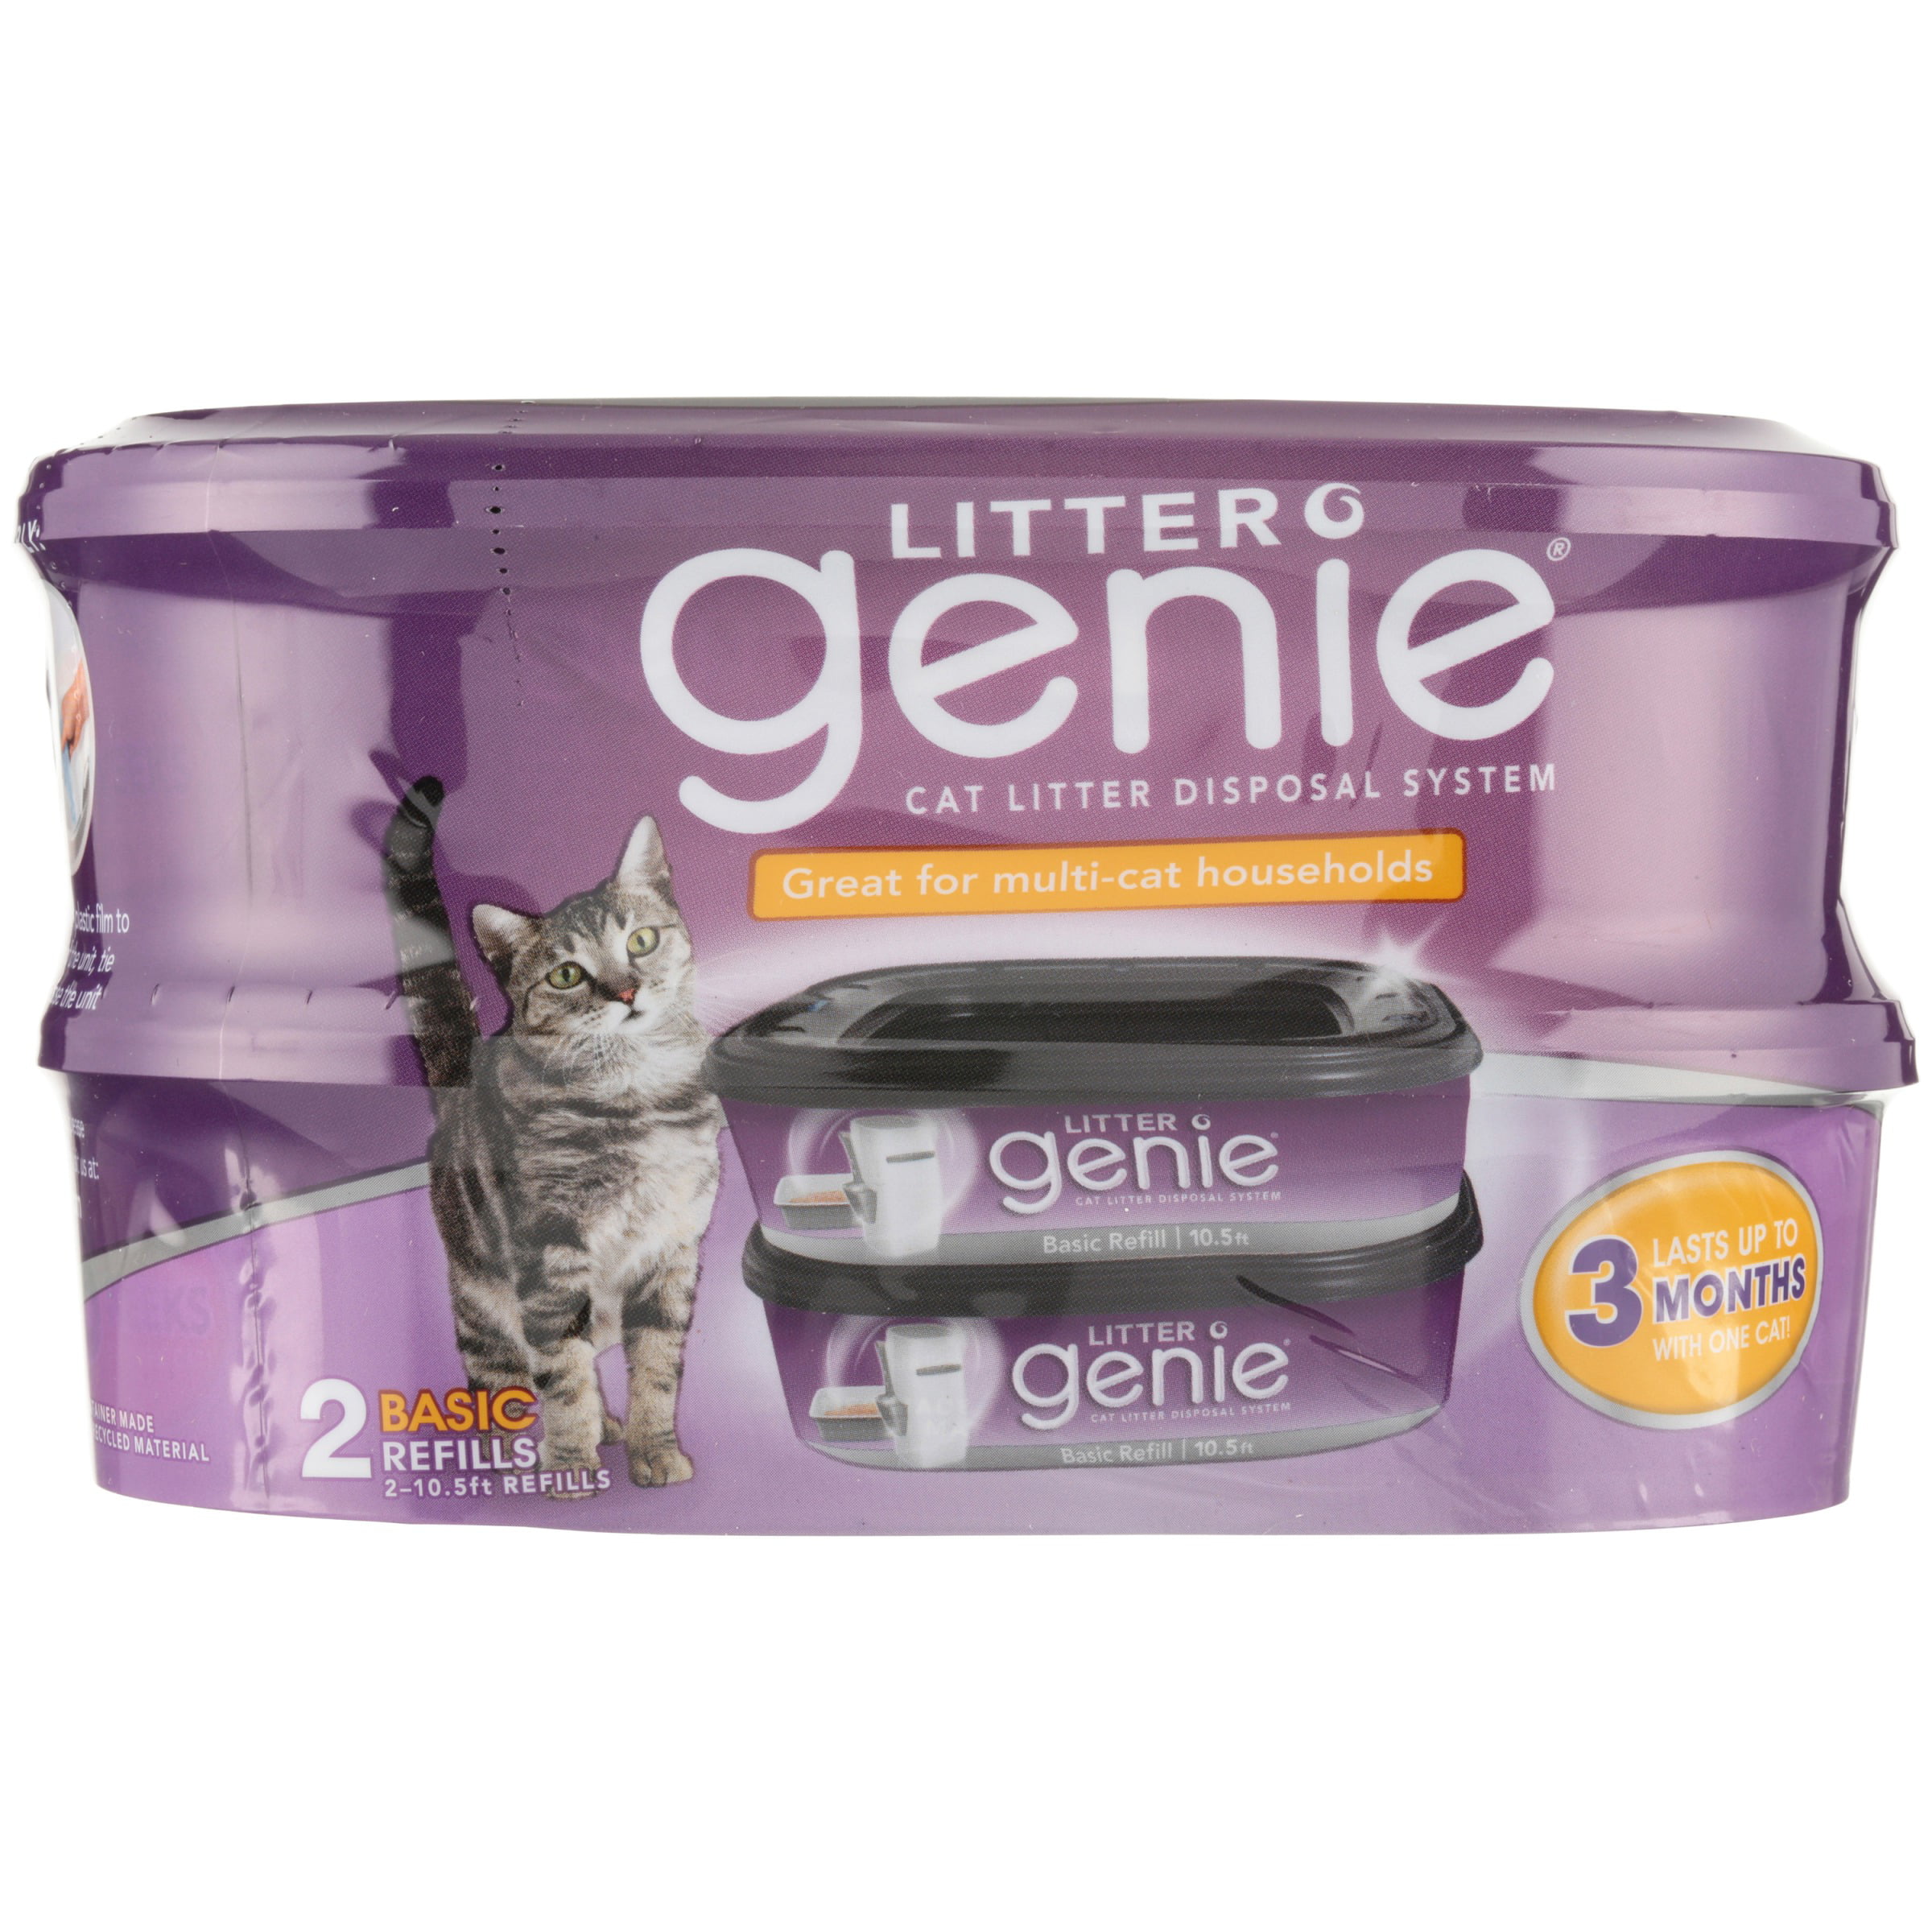 Litter Genie Cat Litter Disposal System Basic Refill, 2 Count